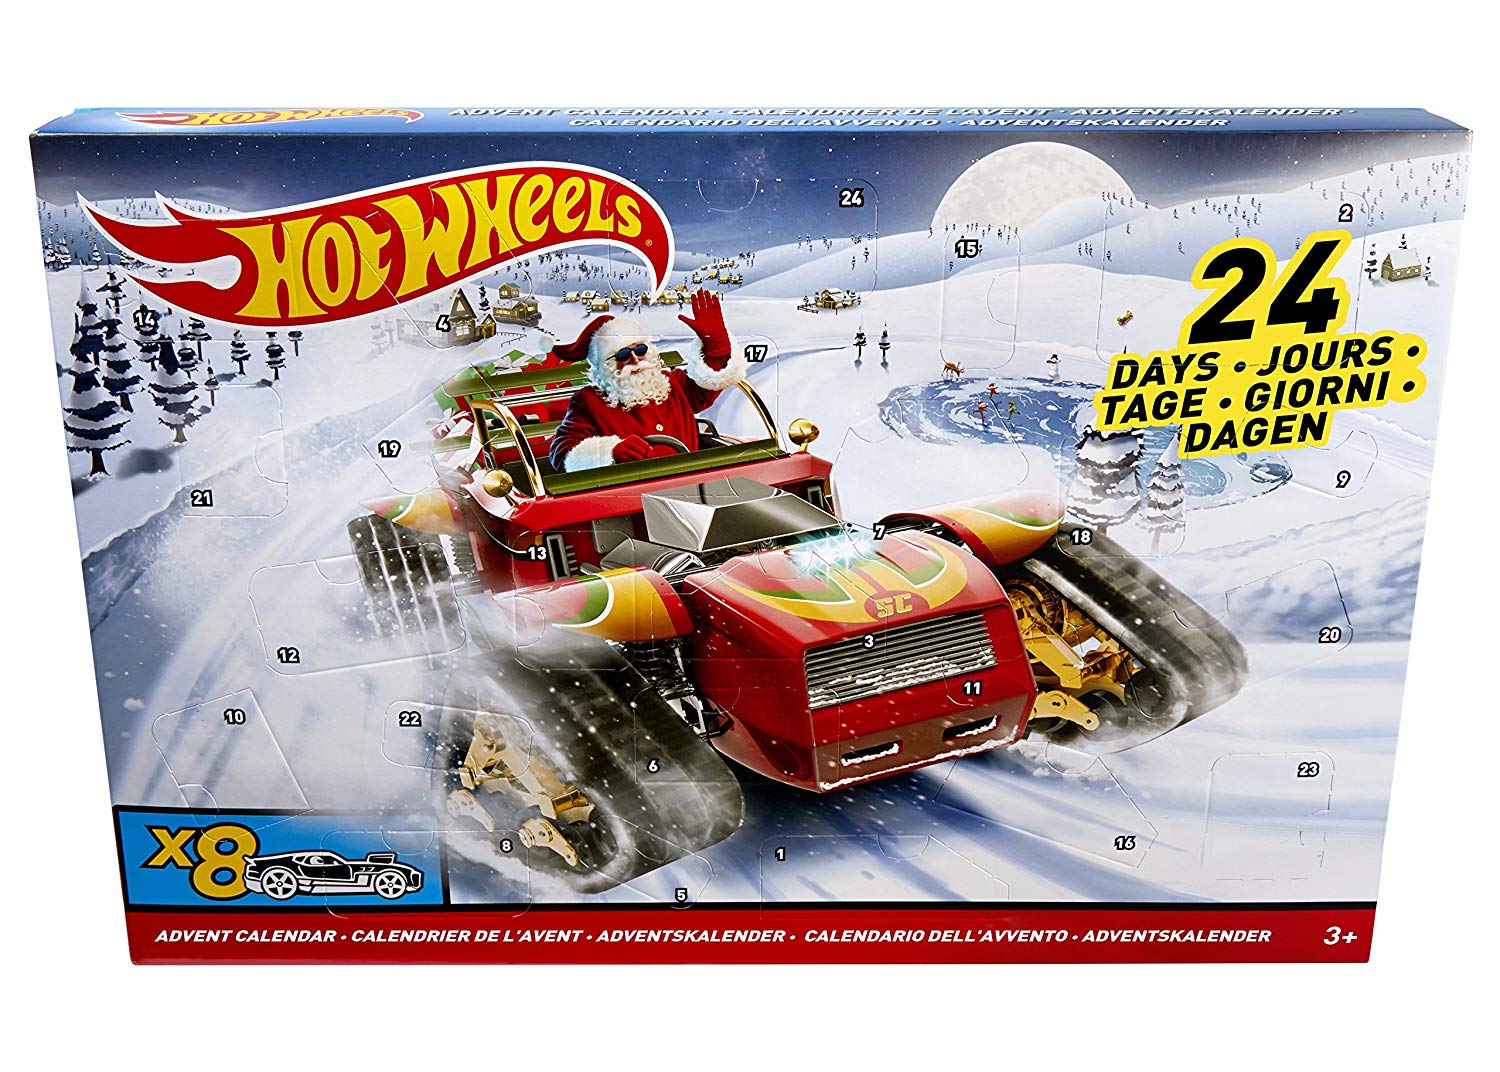 Mattel Dxh Advent Calendar With Vehicles